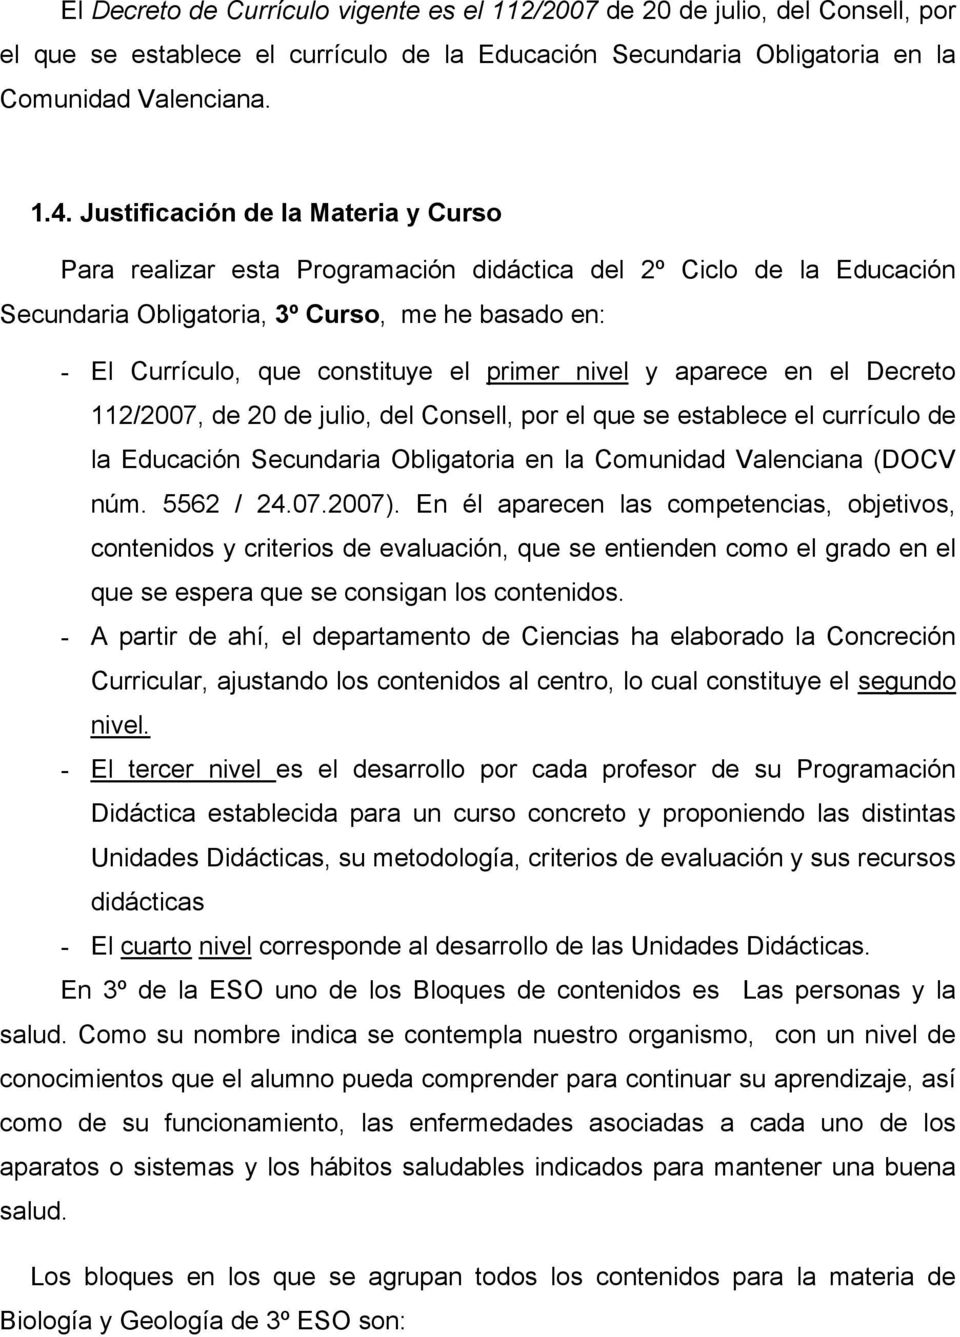 nivel y aparece en el Decreto 112/2007, de 20 de julio, del Consell, por el que se establece el currículo de la Educación Secundaria Obligatoria en la Comunidad Valenciana (DOCV núm. 5562 / 24.07.2007).